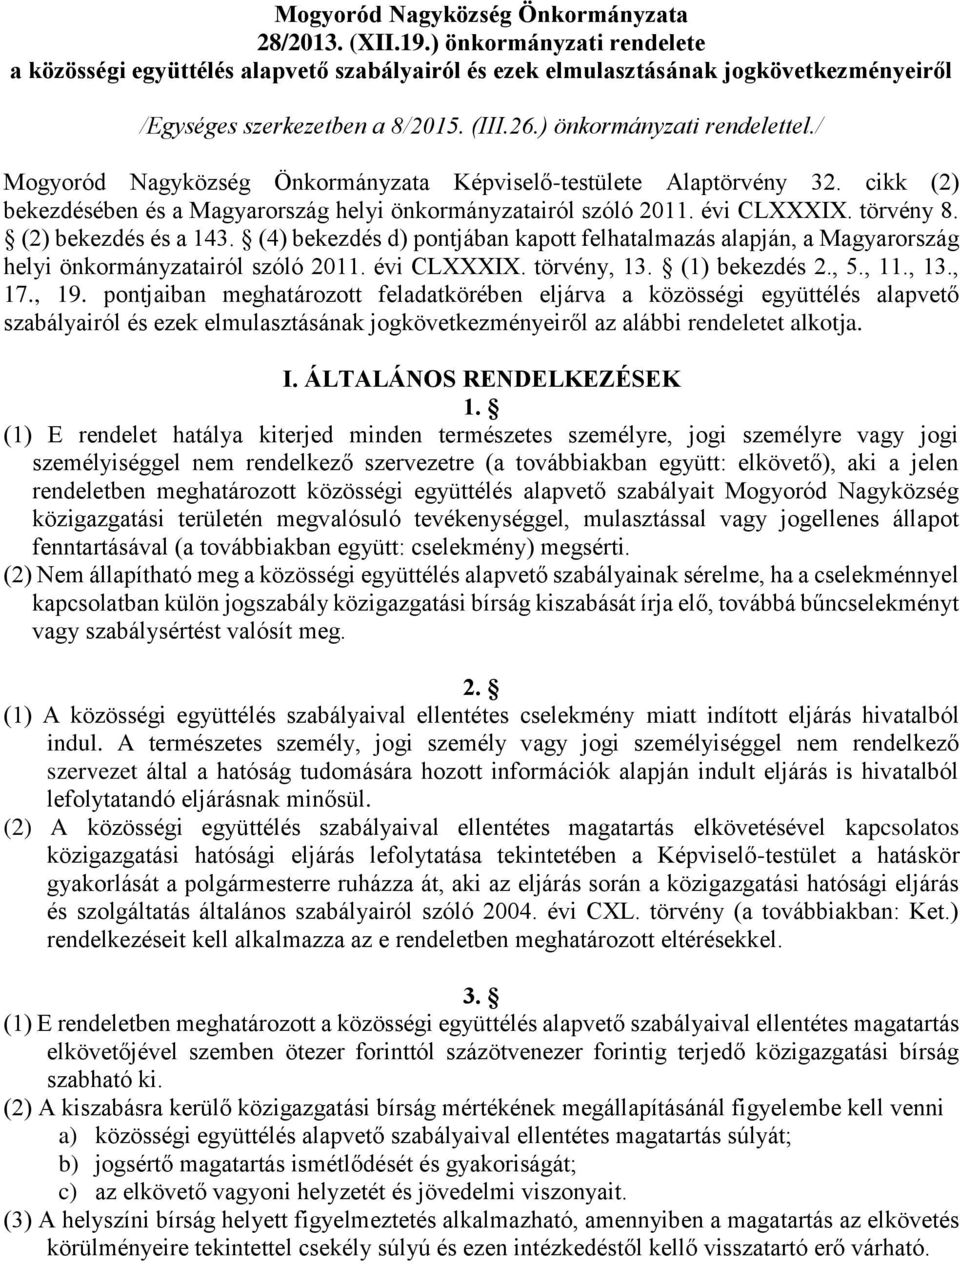 törvény 8. (2) bekezdés és a 143. (4) bekezdés d) pontjában kapott felhatalmazás alapján, a Magyarország helyi önkormányzatairól szóló 2011. évi CLXXXIX. törvény, 13. (1) bekezdés 2., 5., 11., 13., 17.